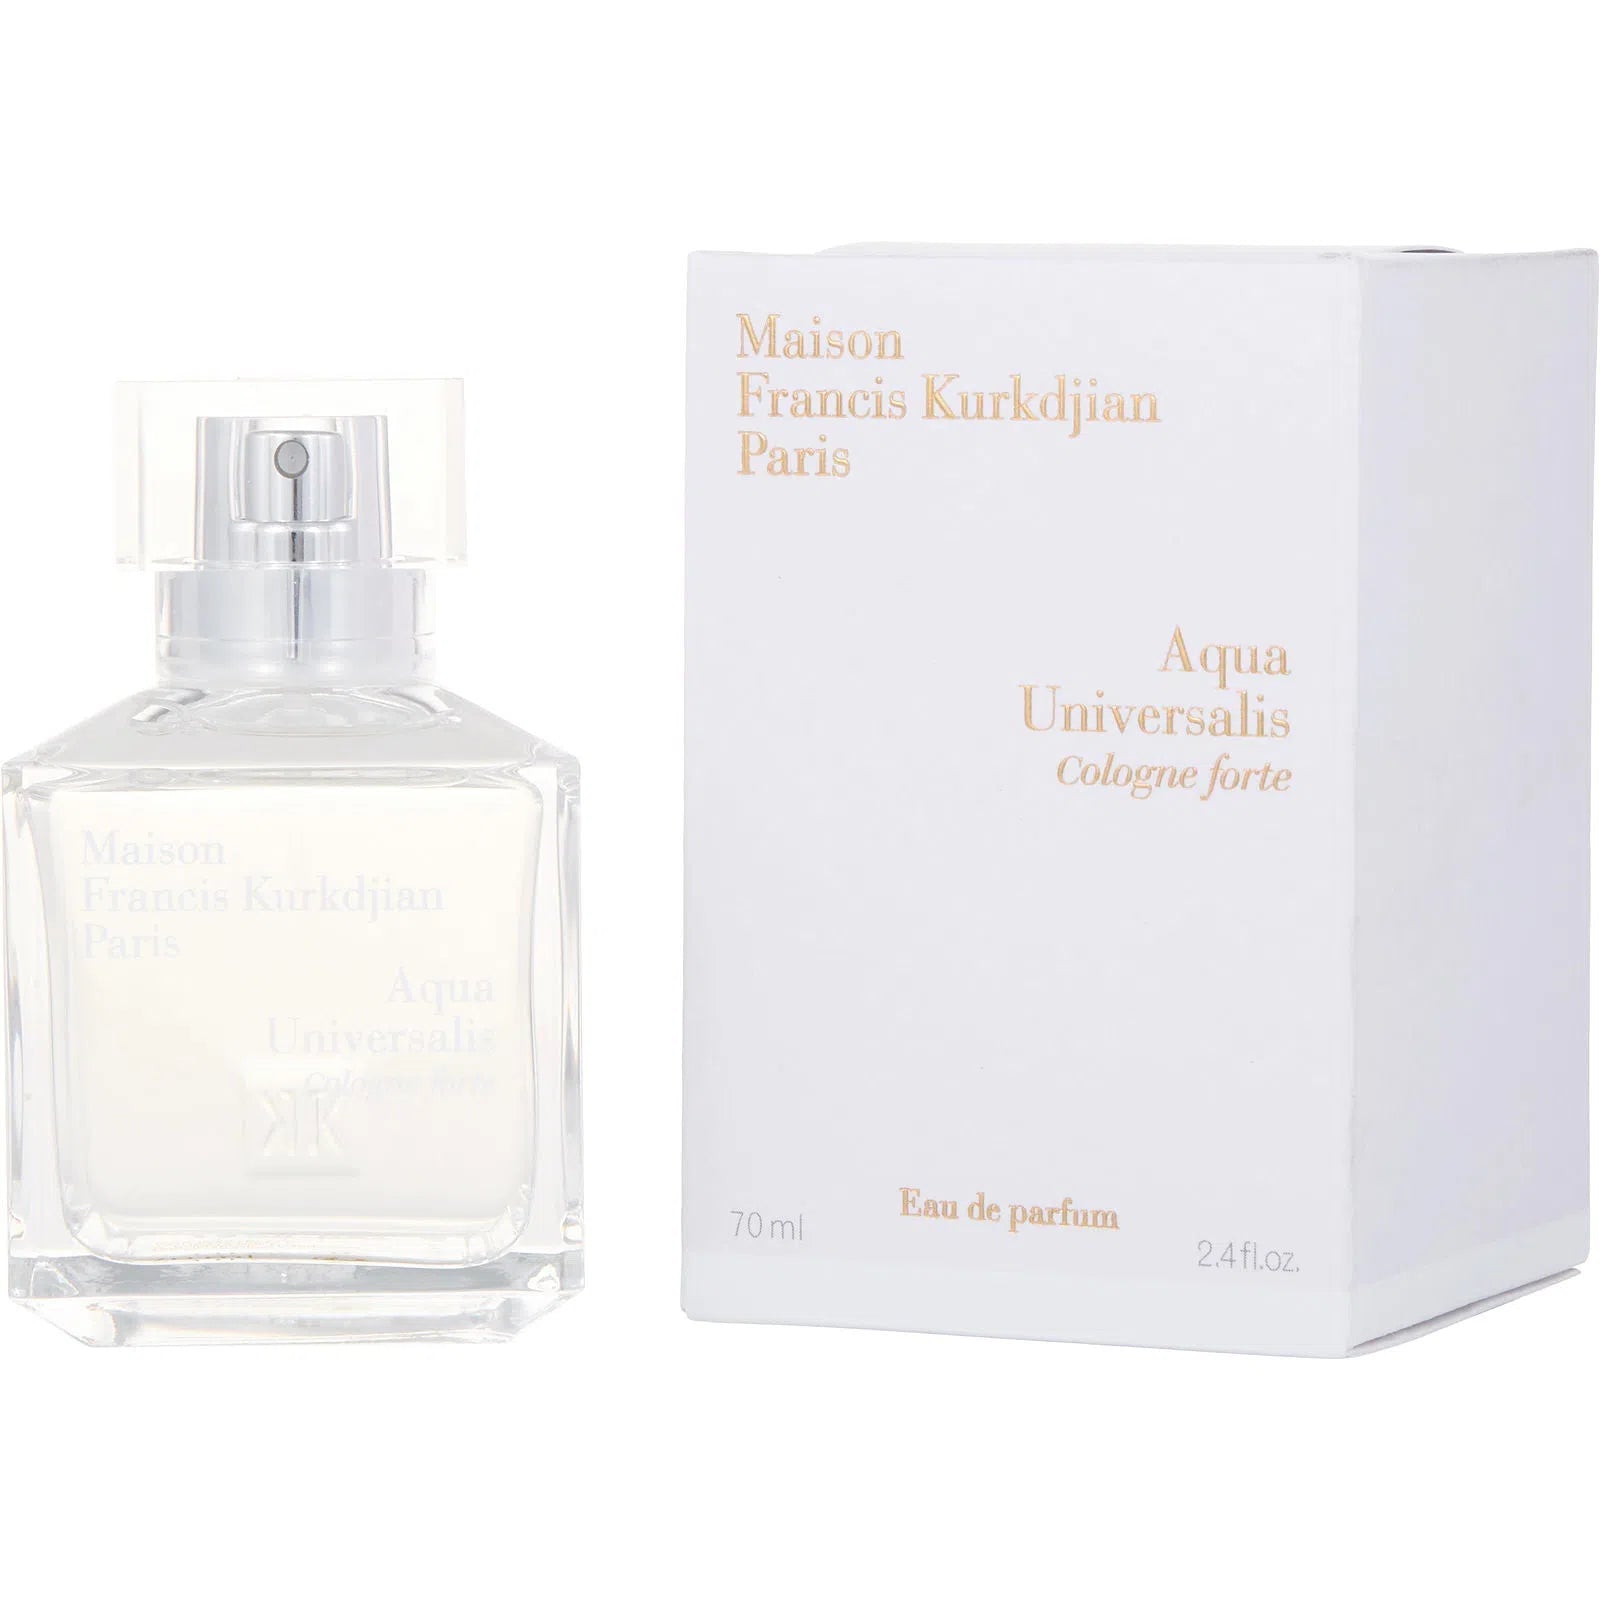 Perfume Maison Francis Kurkdjian Paris Aqua Universalis Cologne Forte EDP (U) / 70 ml - 3700559610992- Prive Perfumes Honduras